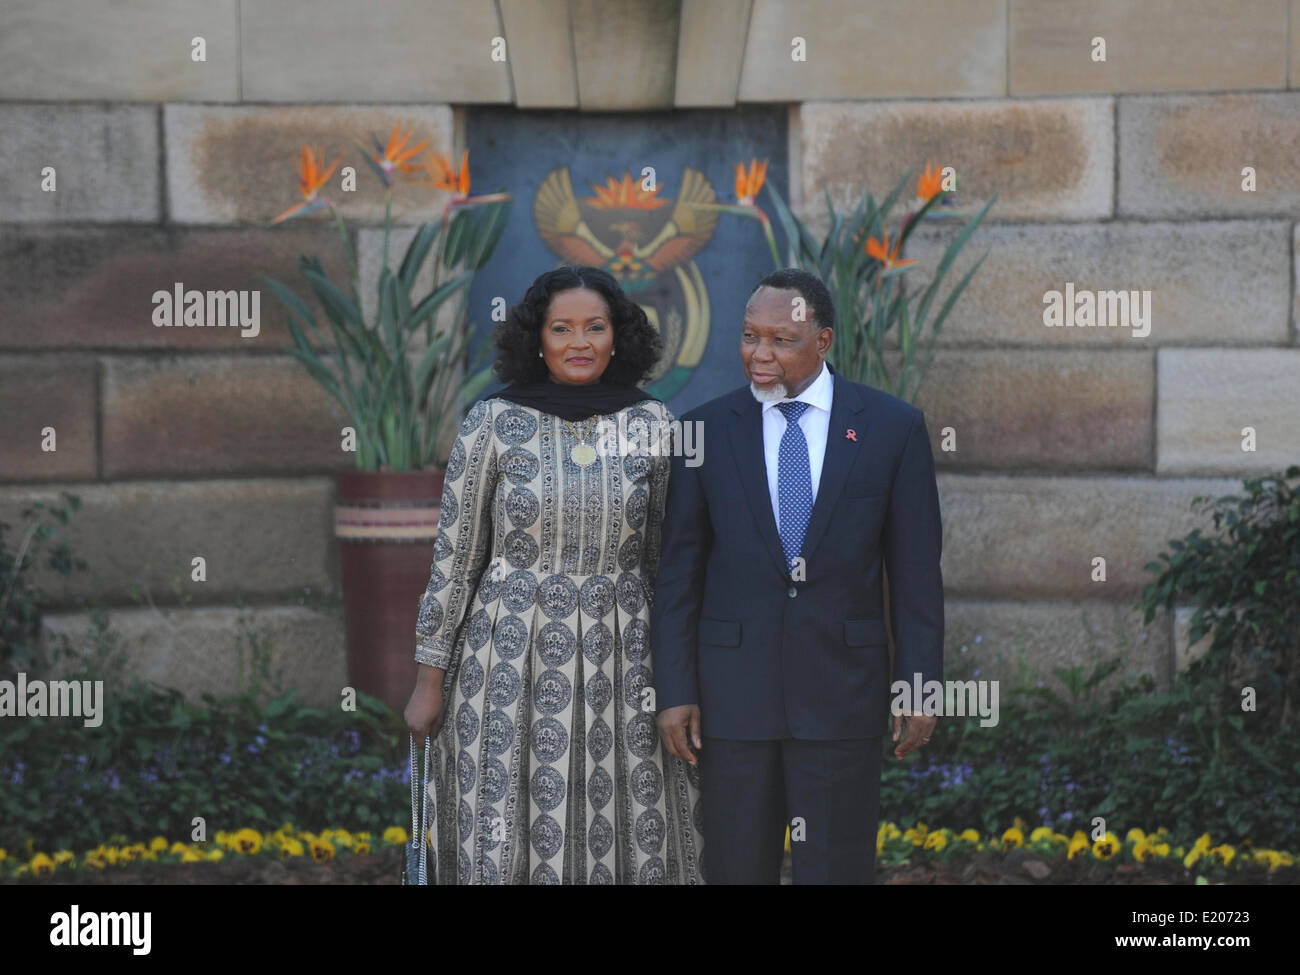 Le président Zuma's inauguration à l'Union Buildings, Pretoria. 2014. Kgalema Mothlante et sa femme arrivent. Banque D'Images